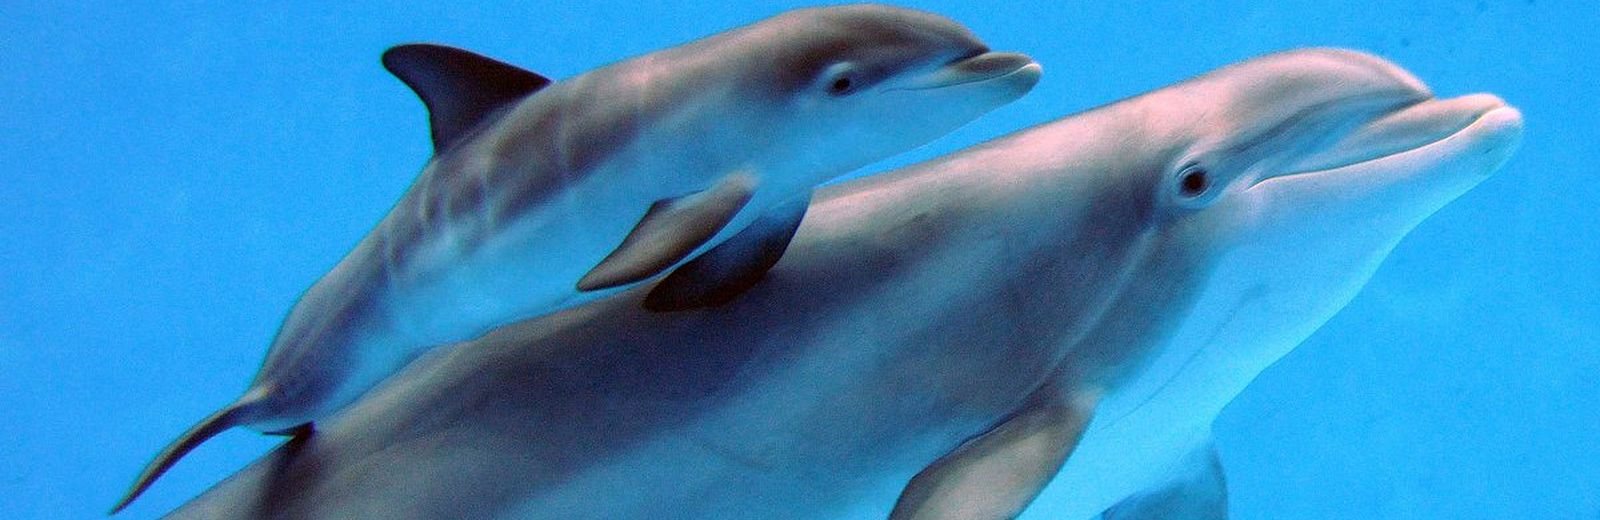 Schwimmen und Schnorcheln mit Delfinen 